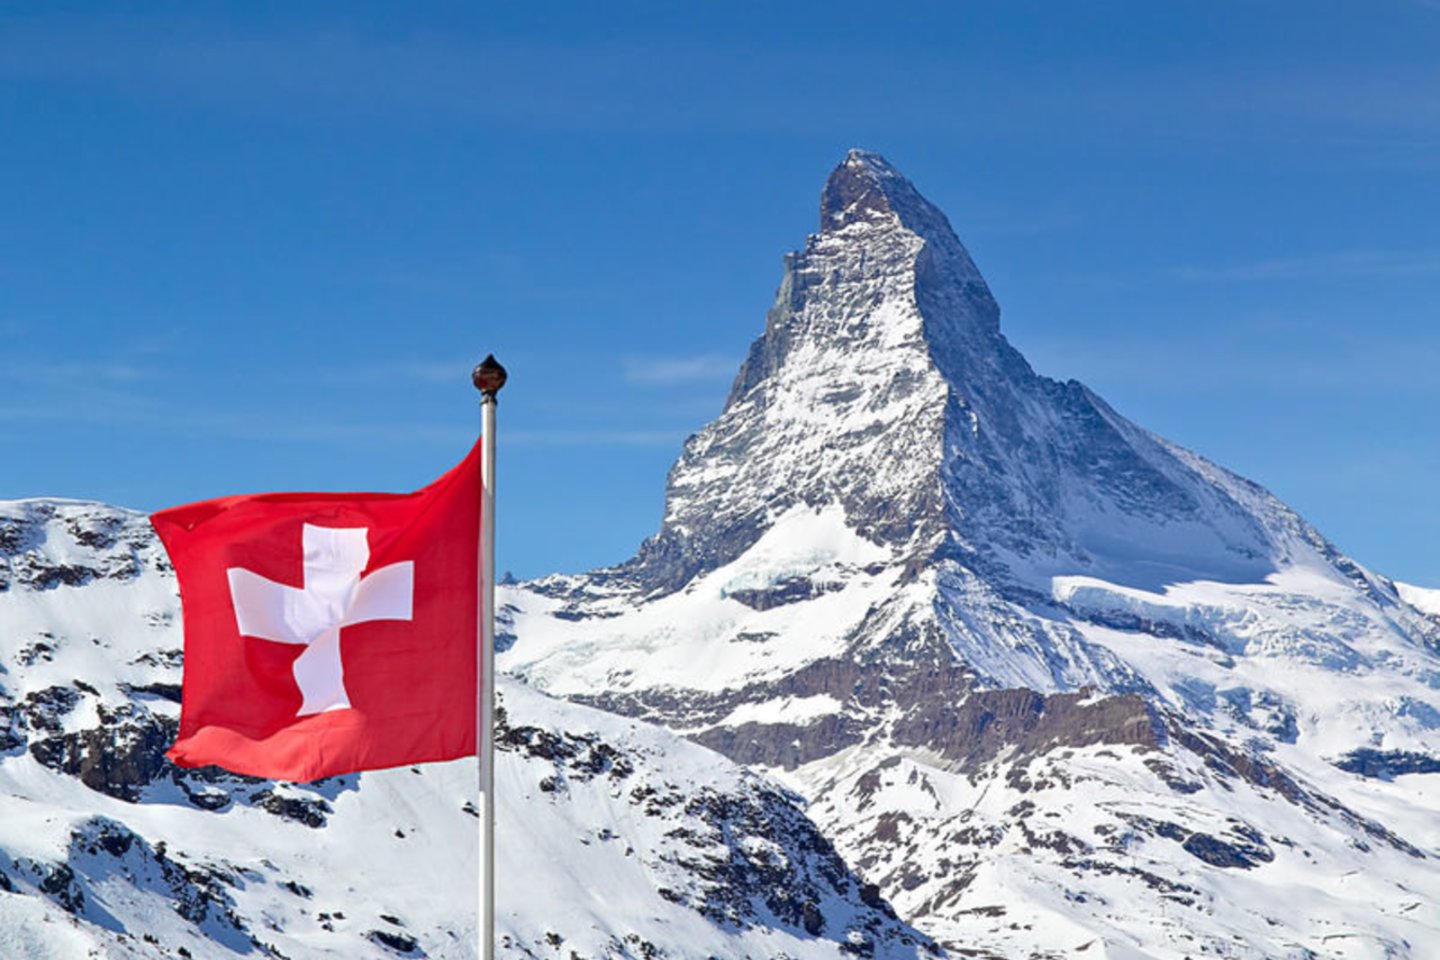 1291 m. prie Liucernos ežero susikūrusių Uri, Švico ir Untervaldeno teritorijų bendruomenės, vadinamieji laisvųjų valstiečių kantonai, sudarė viešajai tvarkai palaikyti būtiną sąjungą. Ši data laikoma Šveicarijos konfederacijos pradžia, o pasirašyta Amžinosios sąjungos sutartis – Šveicarijos nepriklausomybės aktu. Nuo 1891 m. rugpjūčio 1-oji Šveicarijoje yra valstybinė šventė.<br>123rf nuotr.